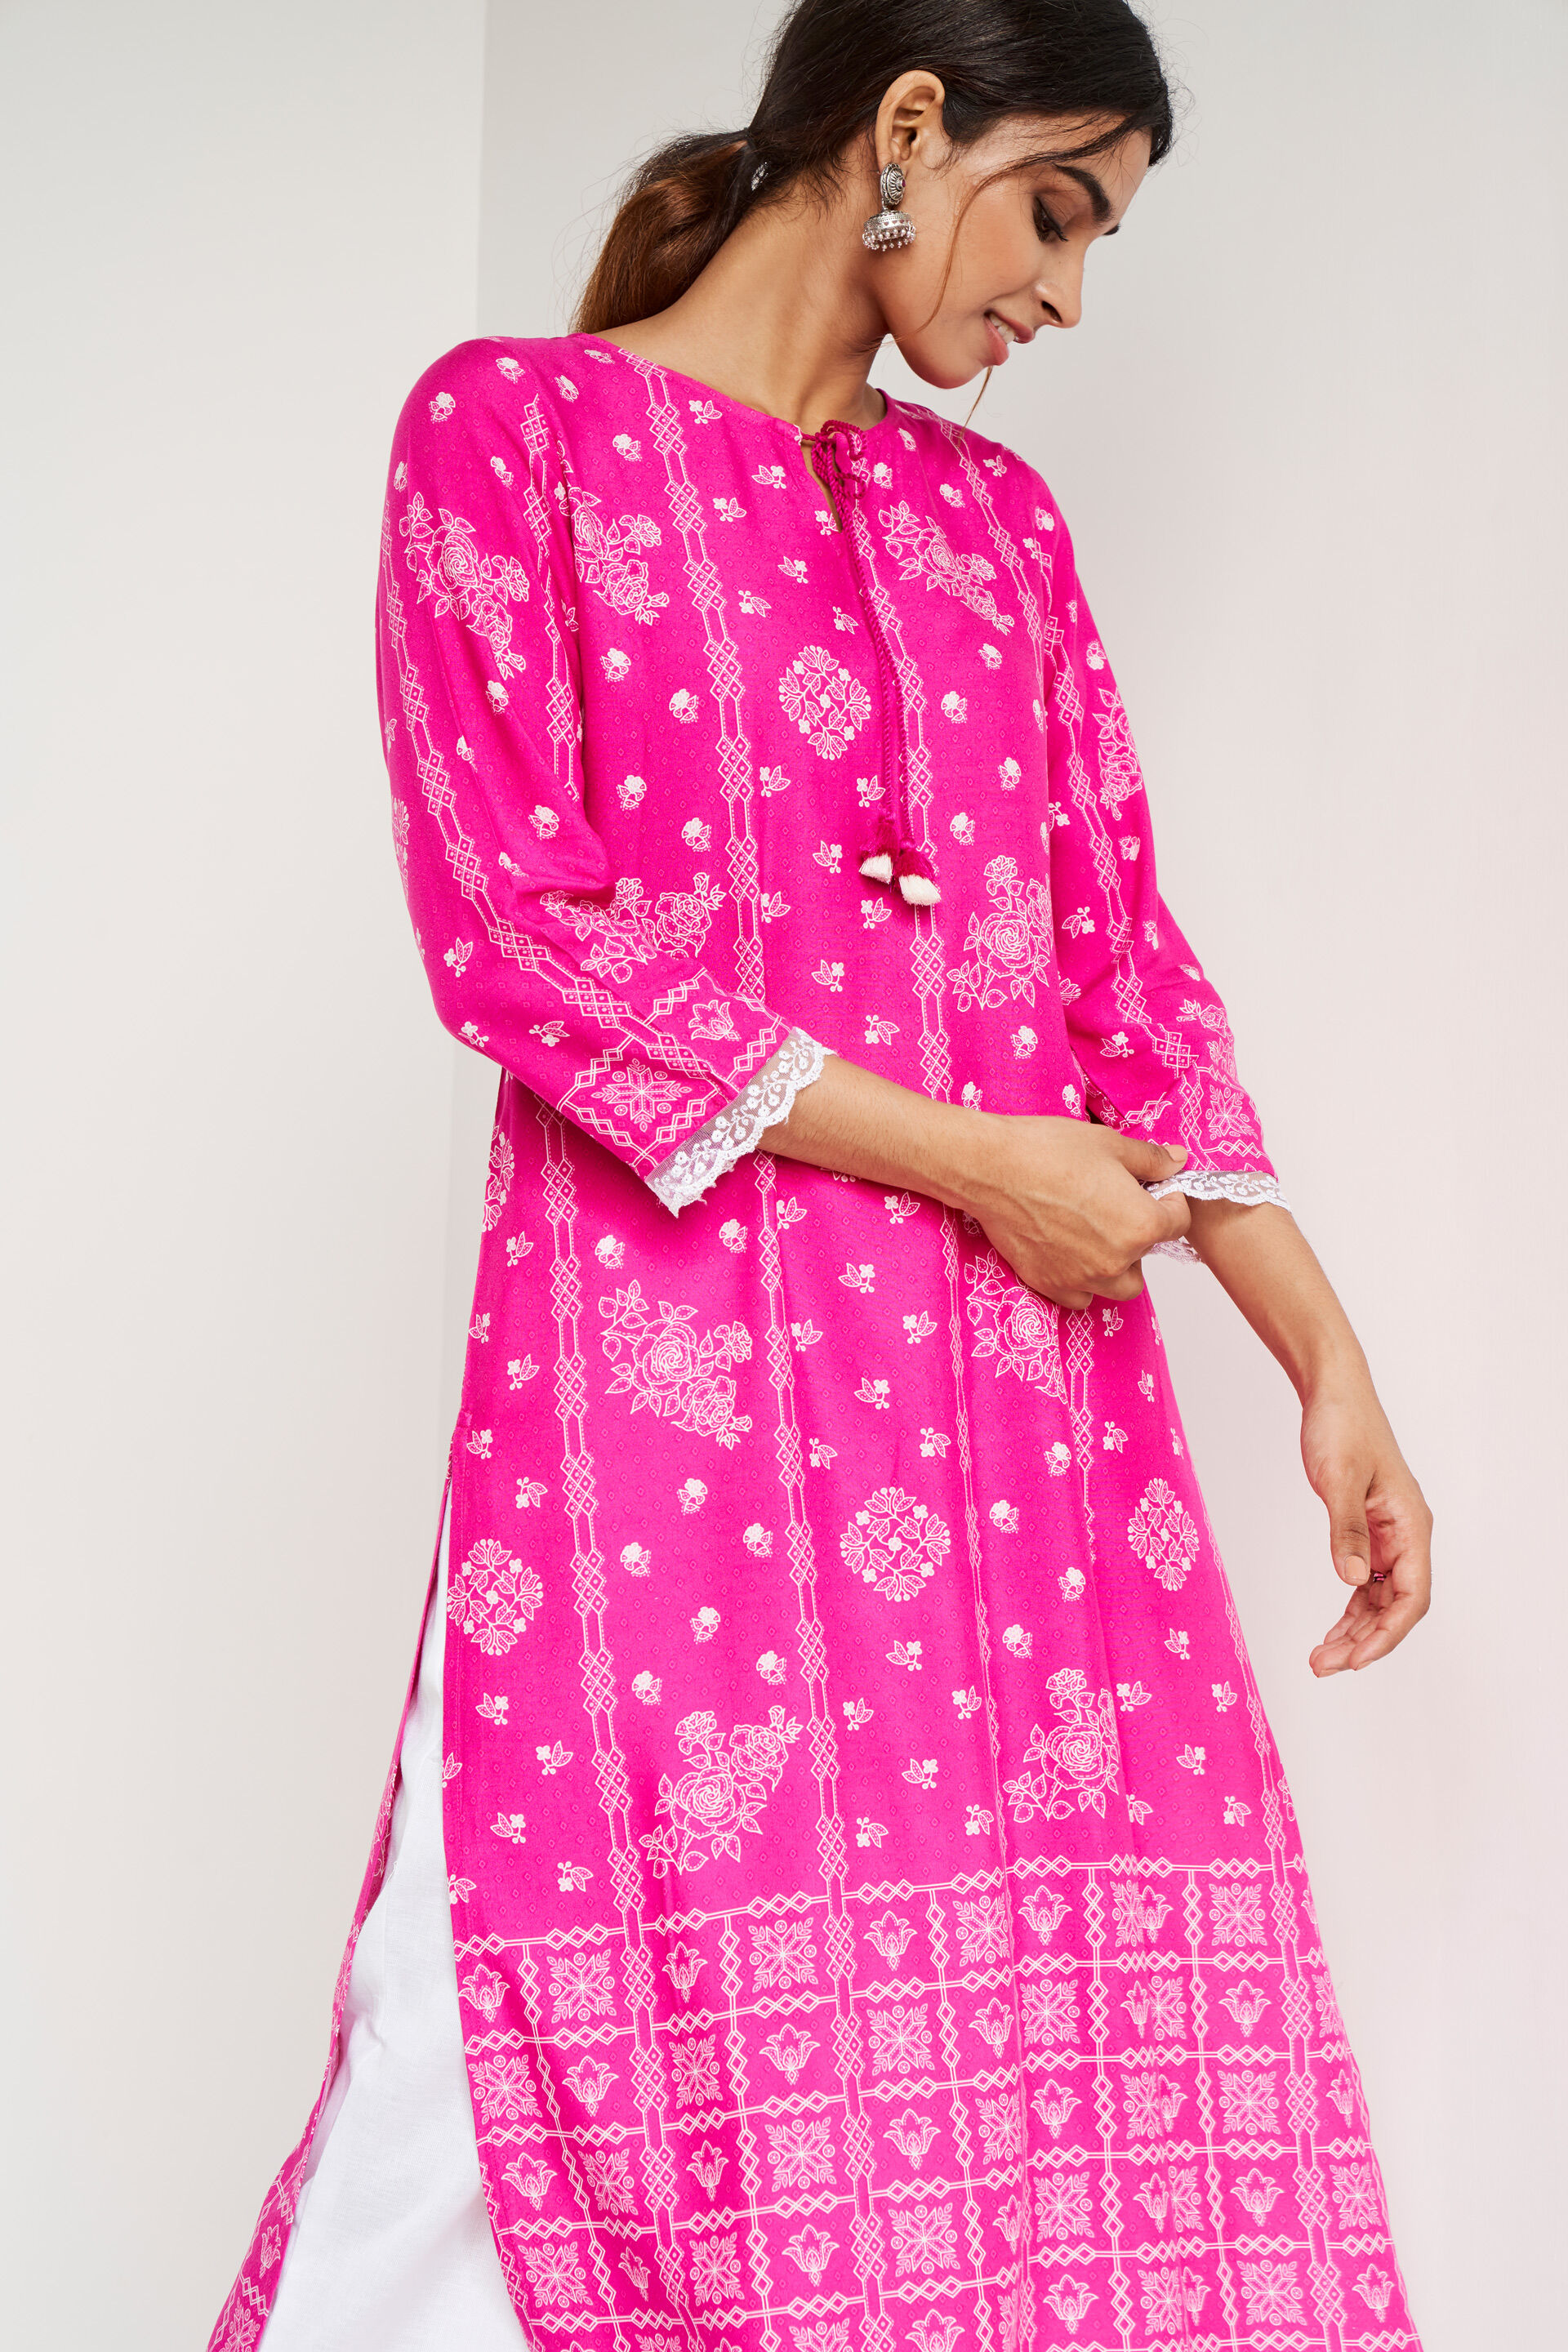 Girlish Kurti Design For Plus Size Women - The Latest, Fancy & Unique